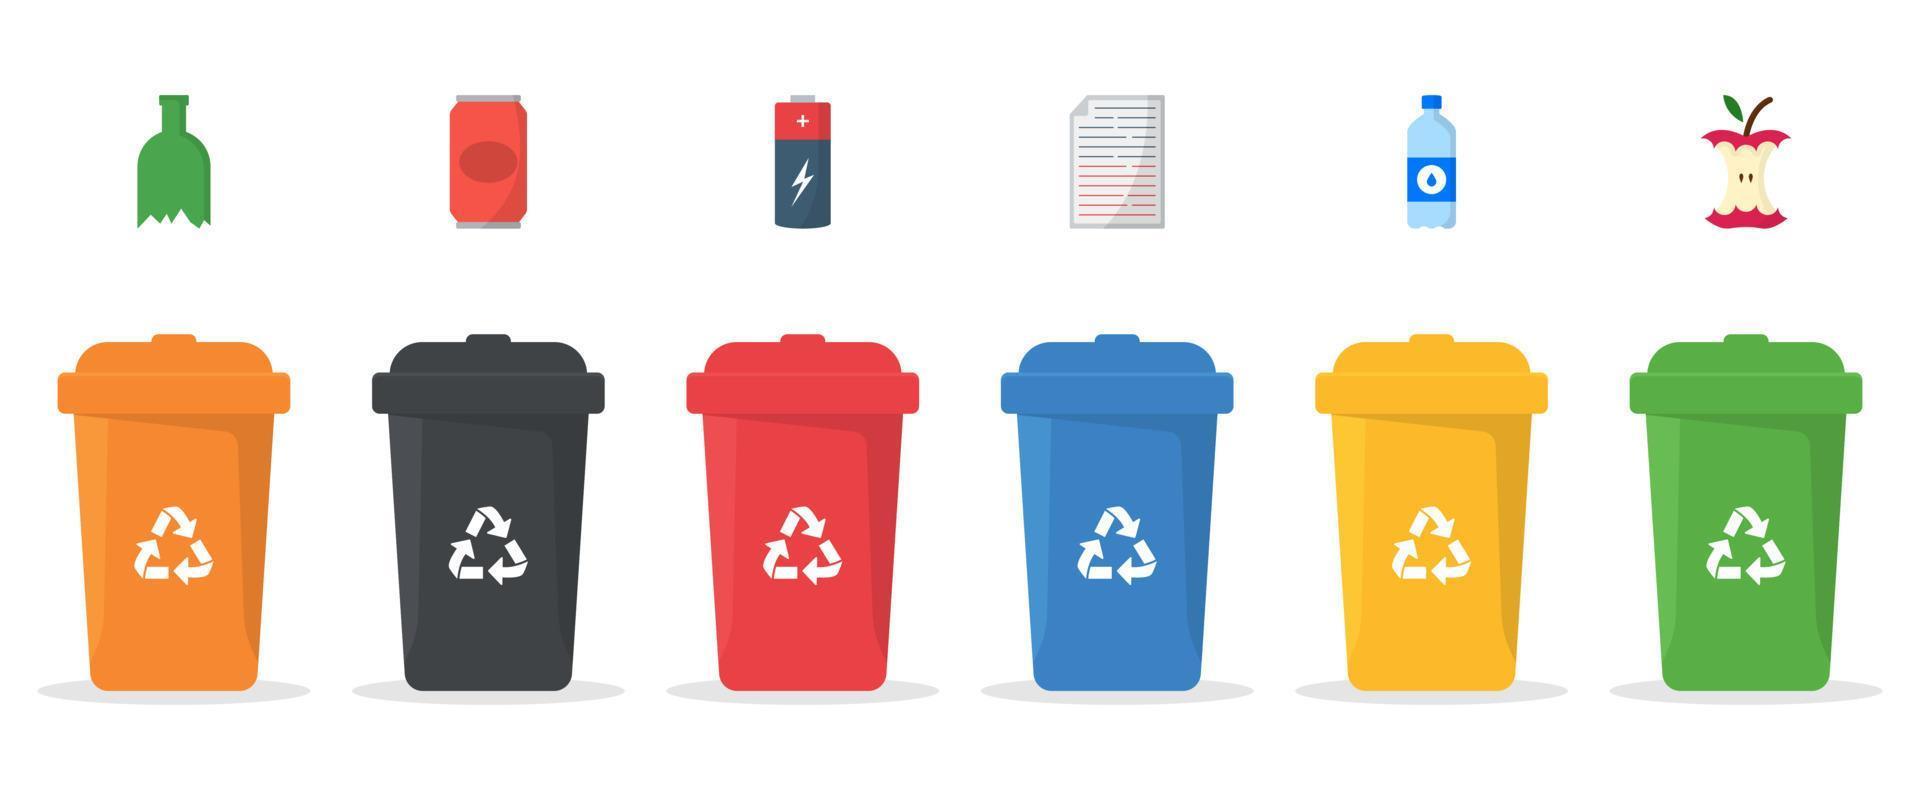 Set of plastic bins for trash separation illustration vector